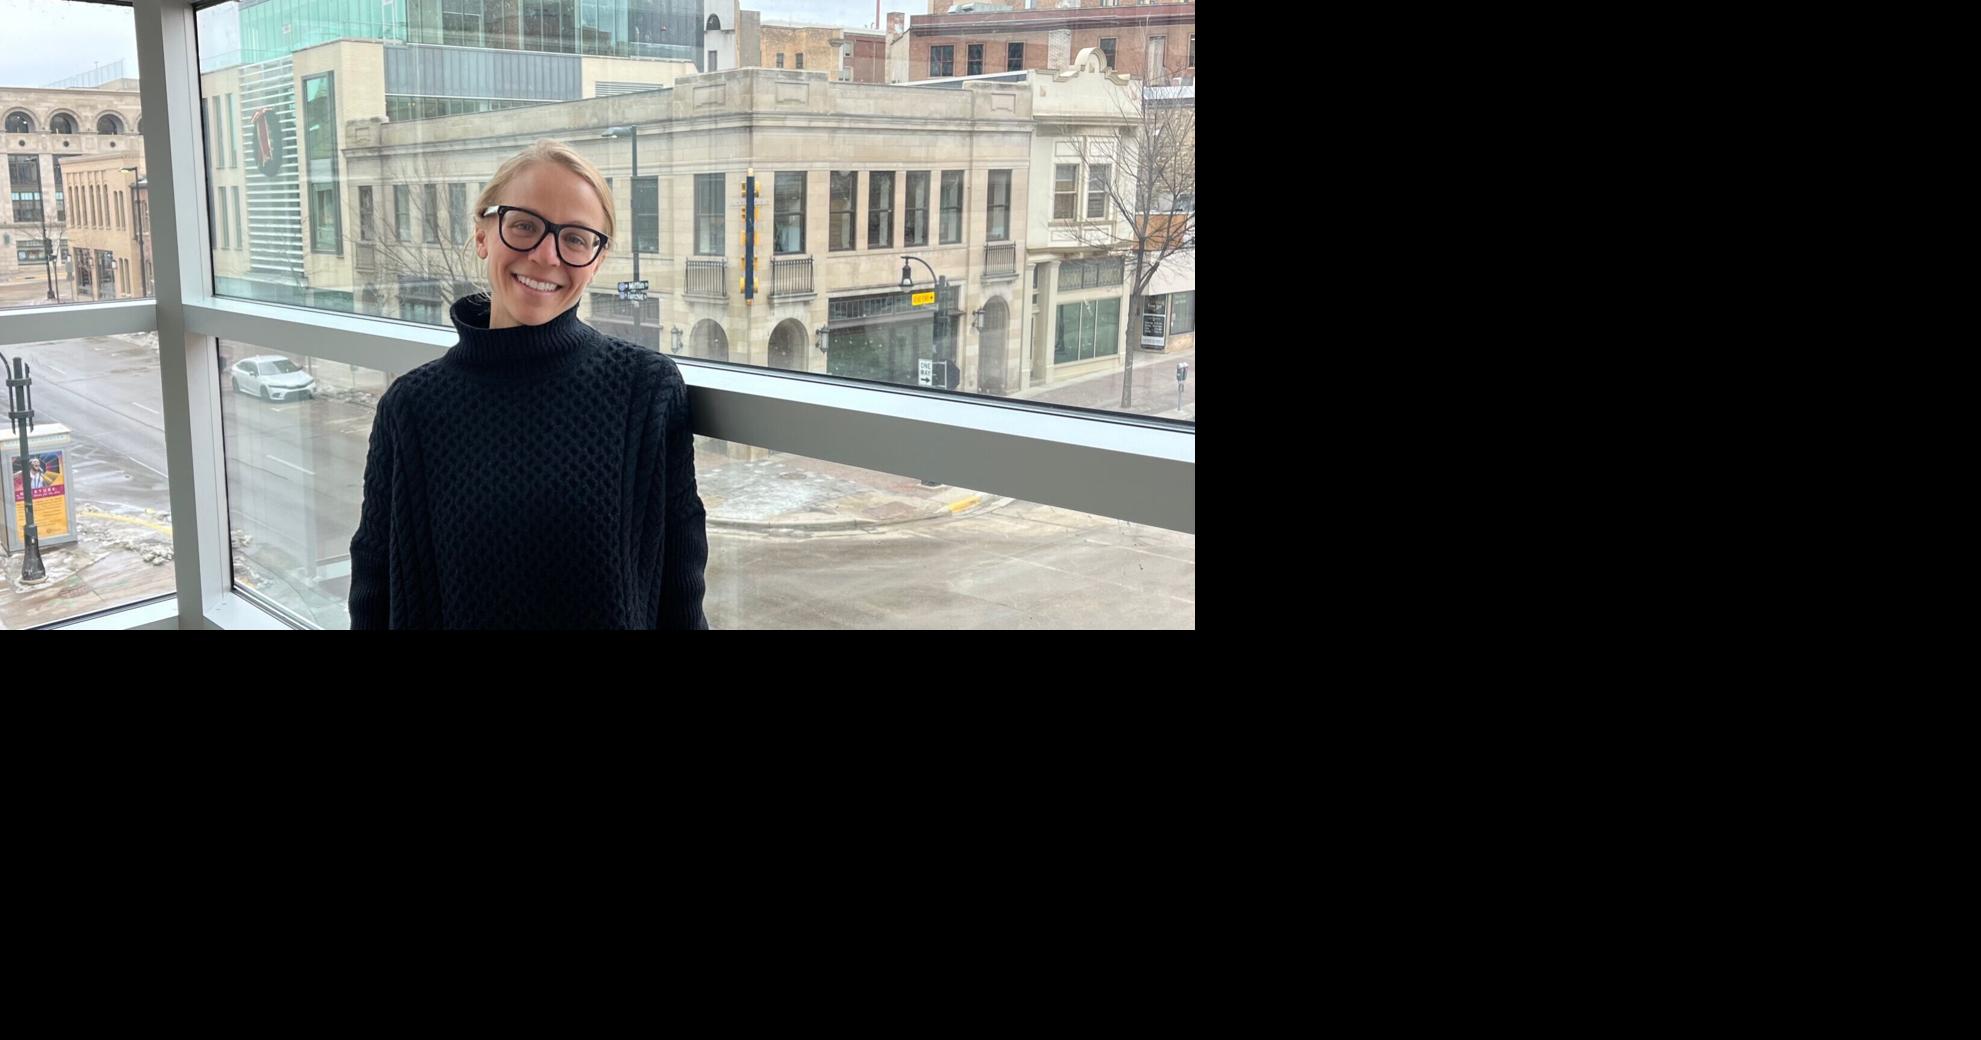 Джейн Ротонда начинает новую главу в качестве директора Висконсинского книжного фестиваля |  развлечение